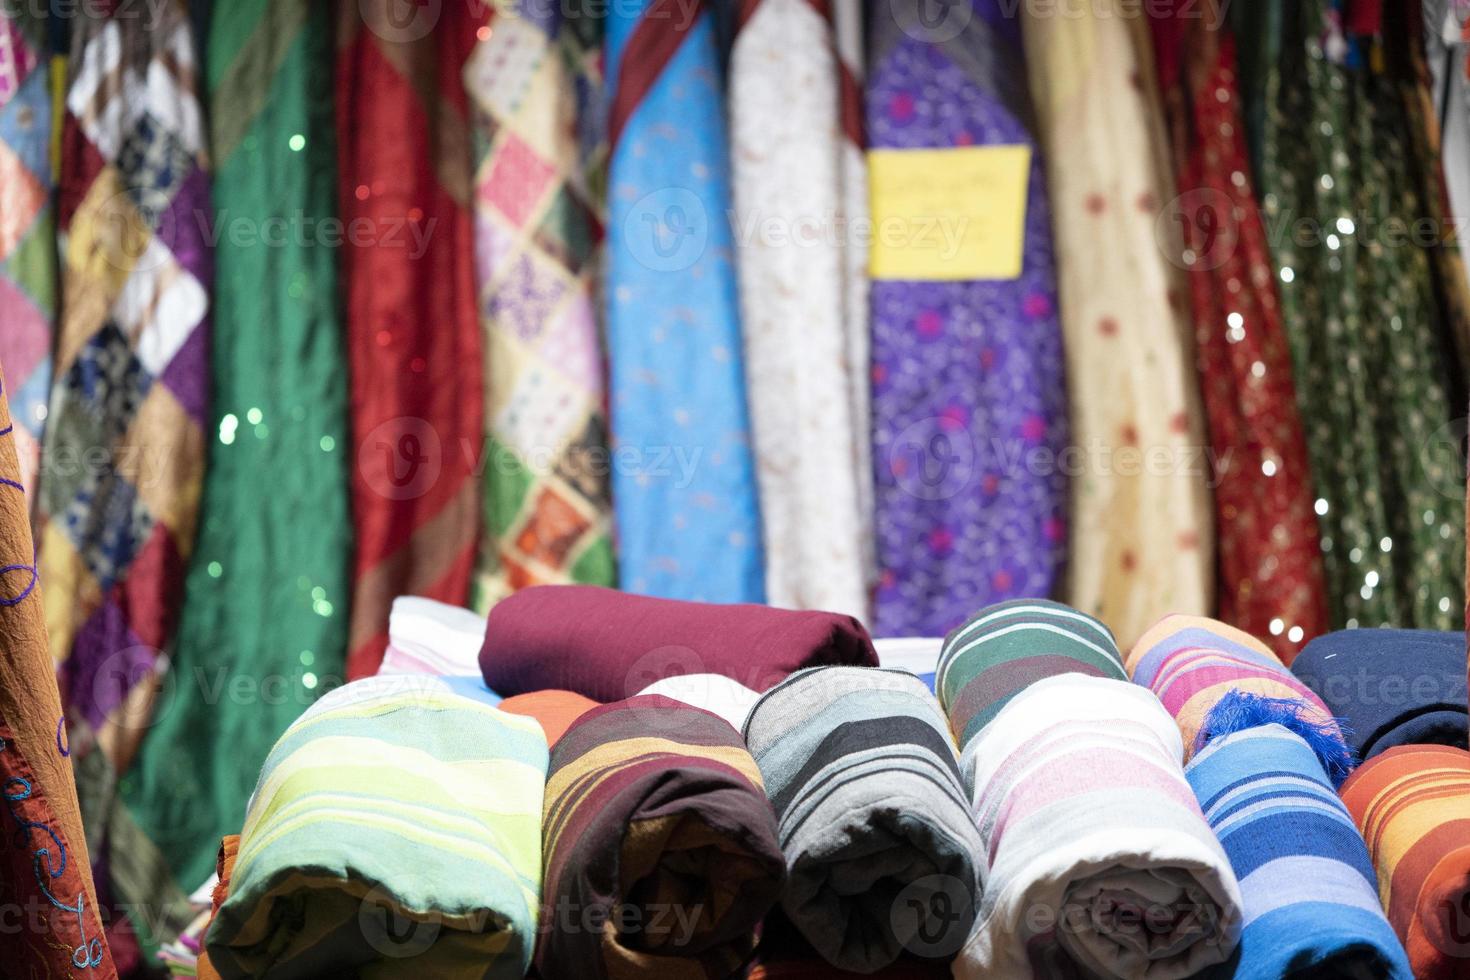 ropa india en el mercado a la venta foto